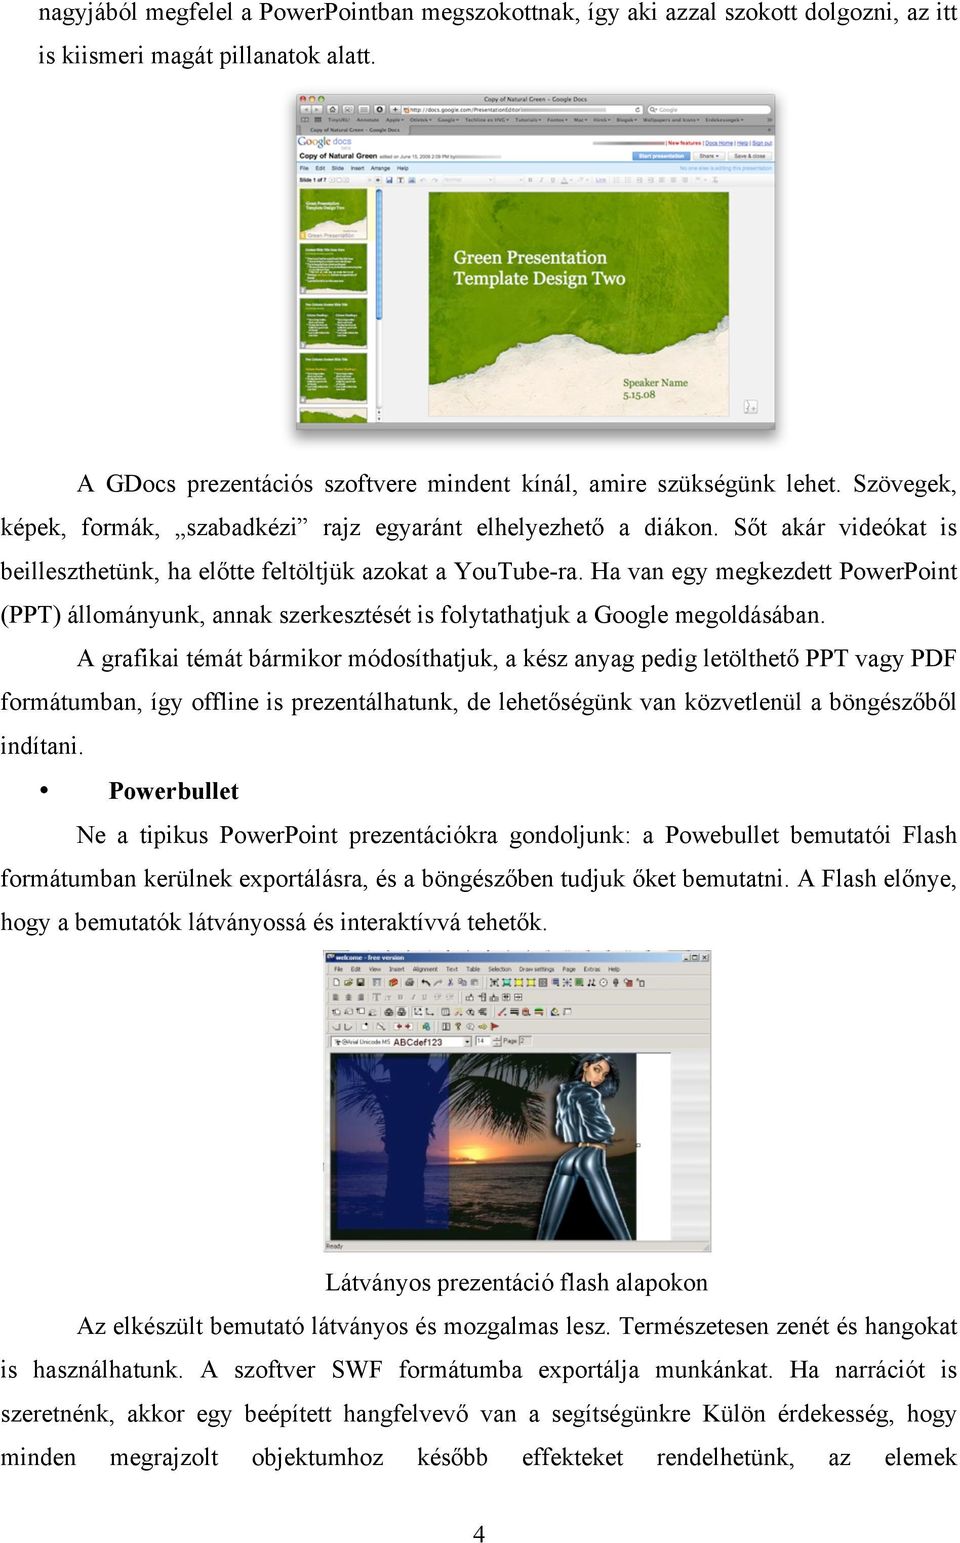 Bemutatók készítése. Szöveget, képet, mozgóképet és egyéb audiovizuális  elemeket tartalmazó lapok sorozata. - PDF Ingyenes letöltés